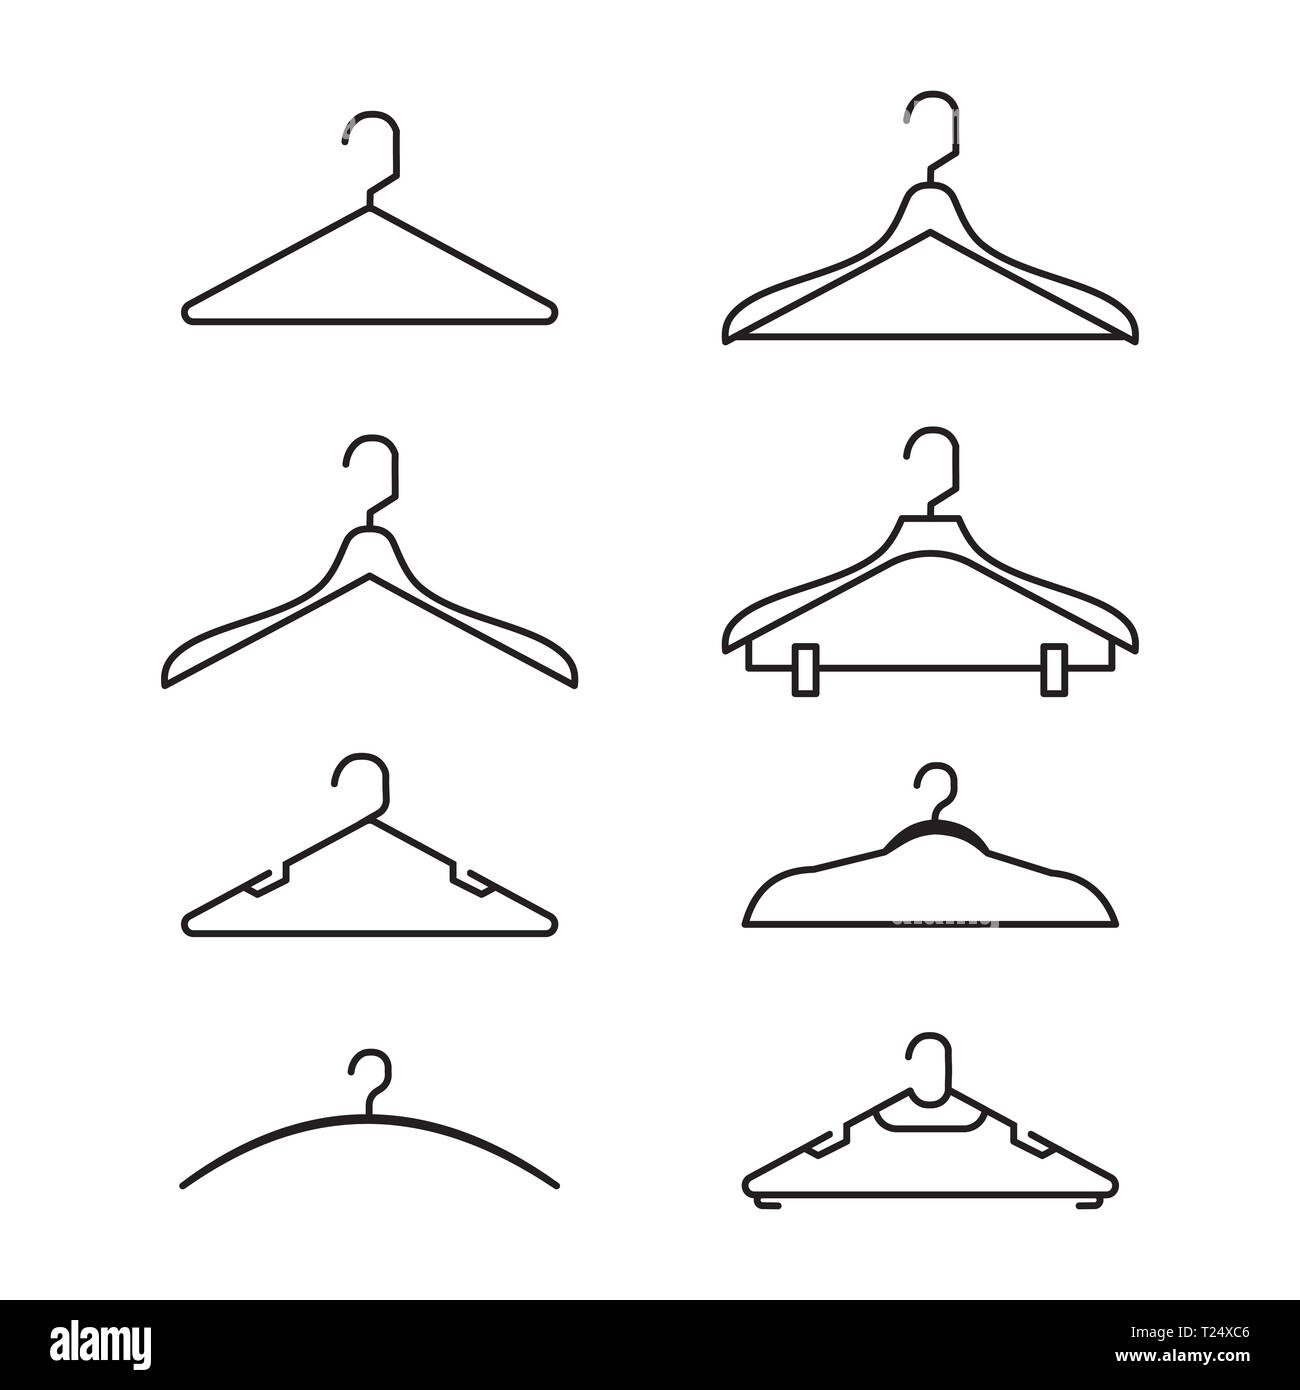 Conjunto de ilustración vectorial gancho para ropa y moda silueta plana de estilo de diseño Fotografía de stock Alamy